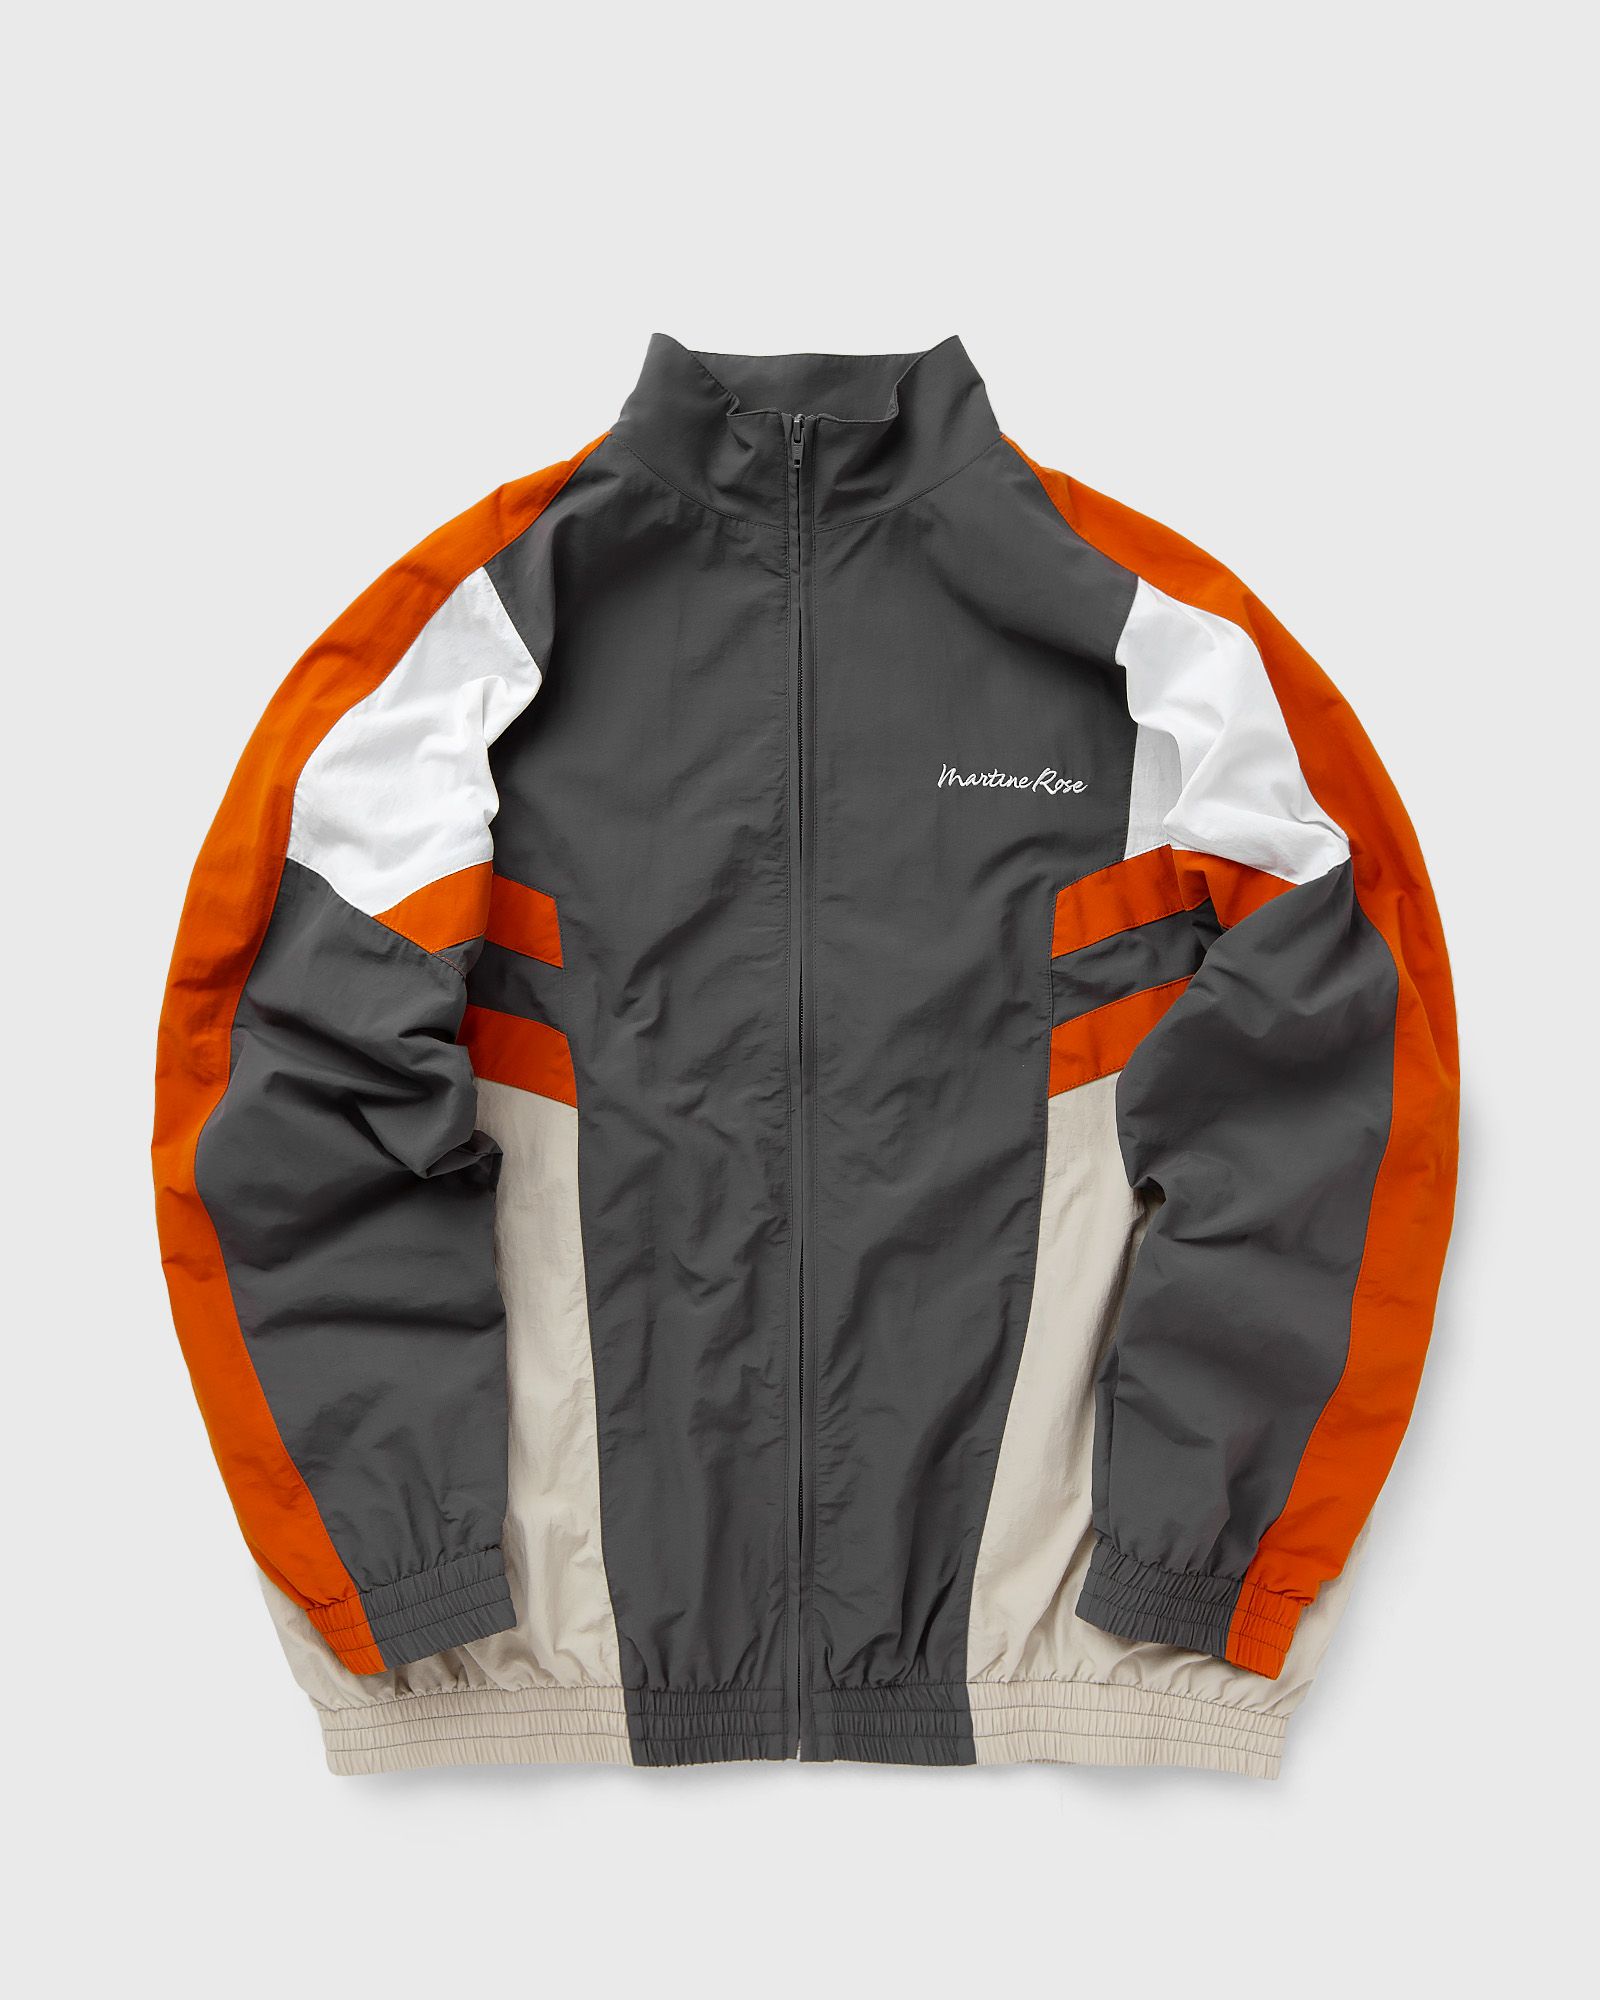 Martine Rose - panelled track jacket men track jackets grey in größe:m